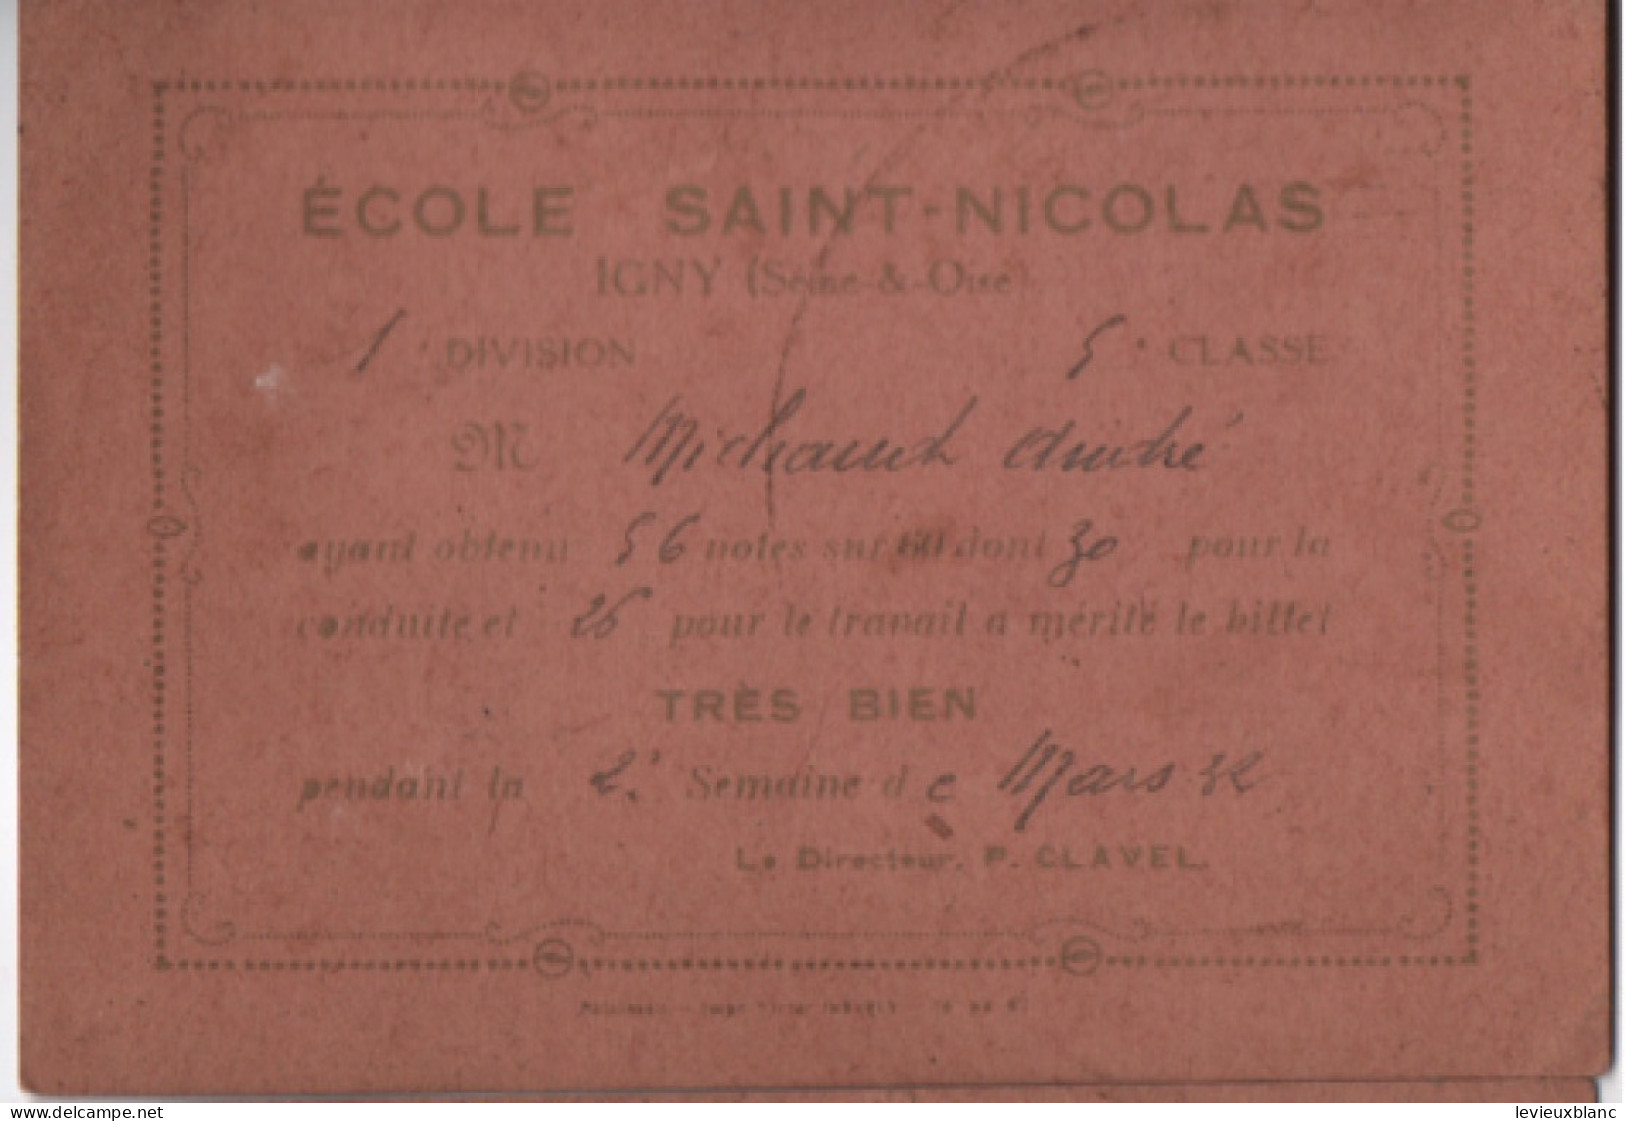 5 Billets Scolaires/ " Très Bien " / Ecole Saint-Nicolas / IGNY Seine & Oise/Janvier - Avril 1932                 CAH377 - Diplômes & Bulletins Scolaires